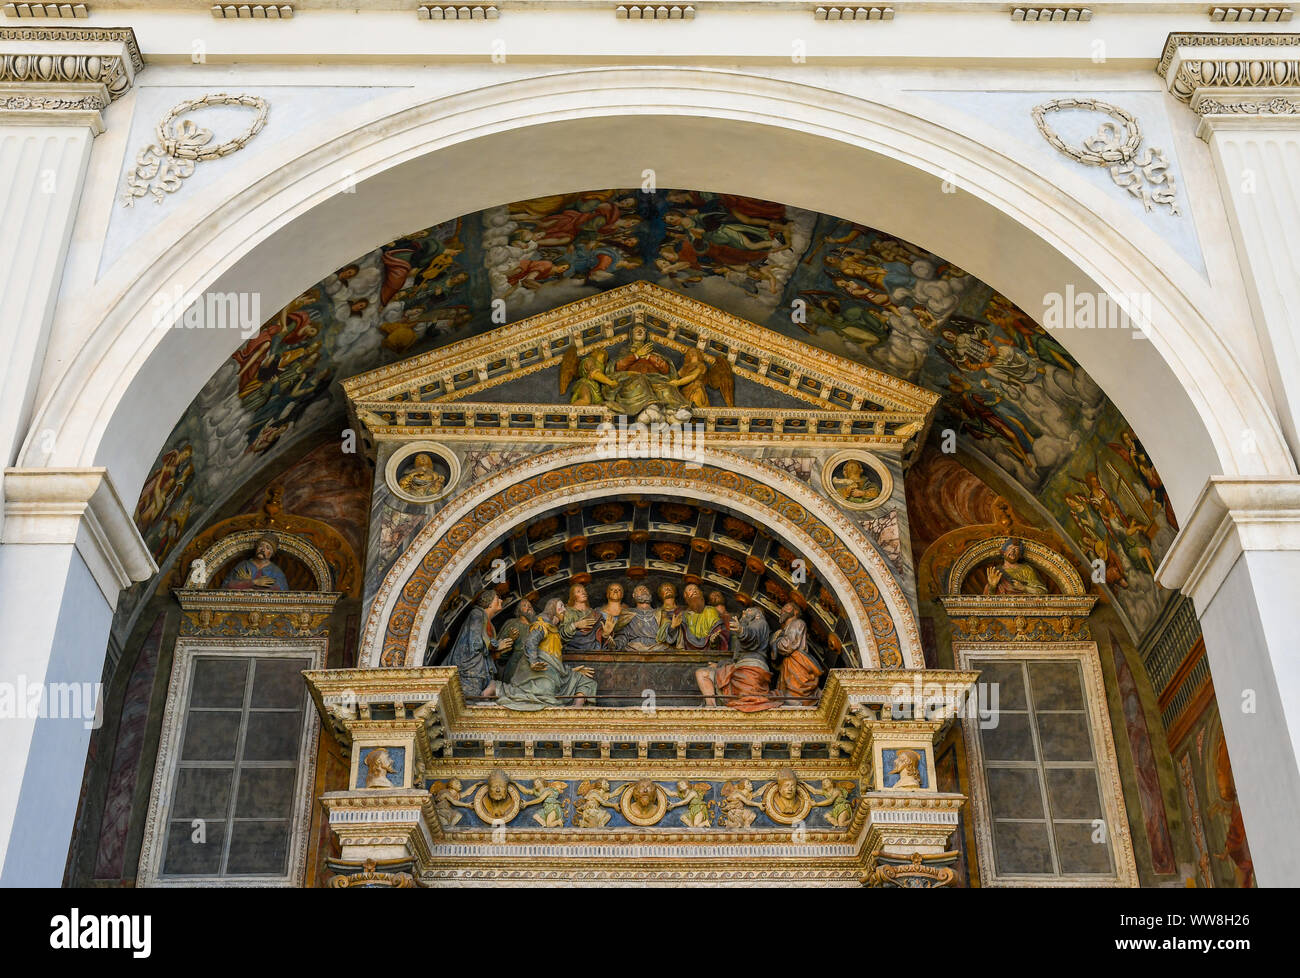 Particolare della facciata della Cattedrale di Aosta con un gruppo di grandezza sculture in terracotta che rappresenta l'Assunzione della Vergine Maria, Italia Foto Stock